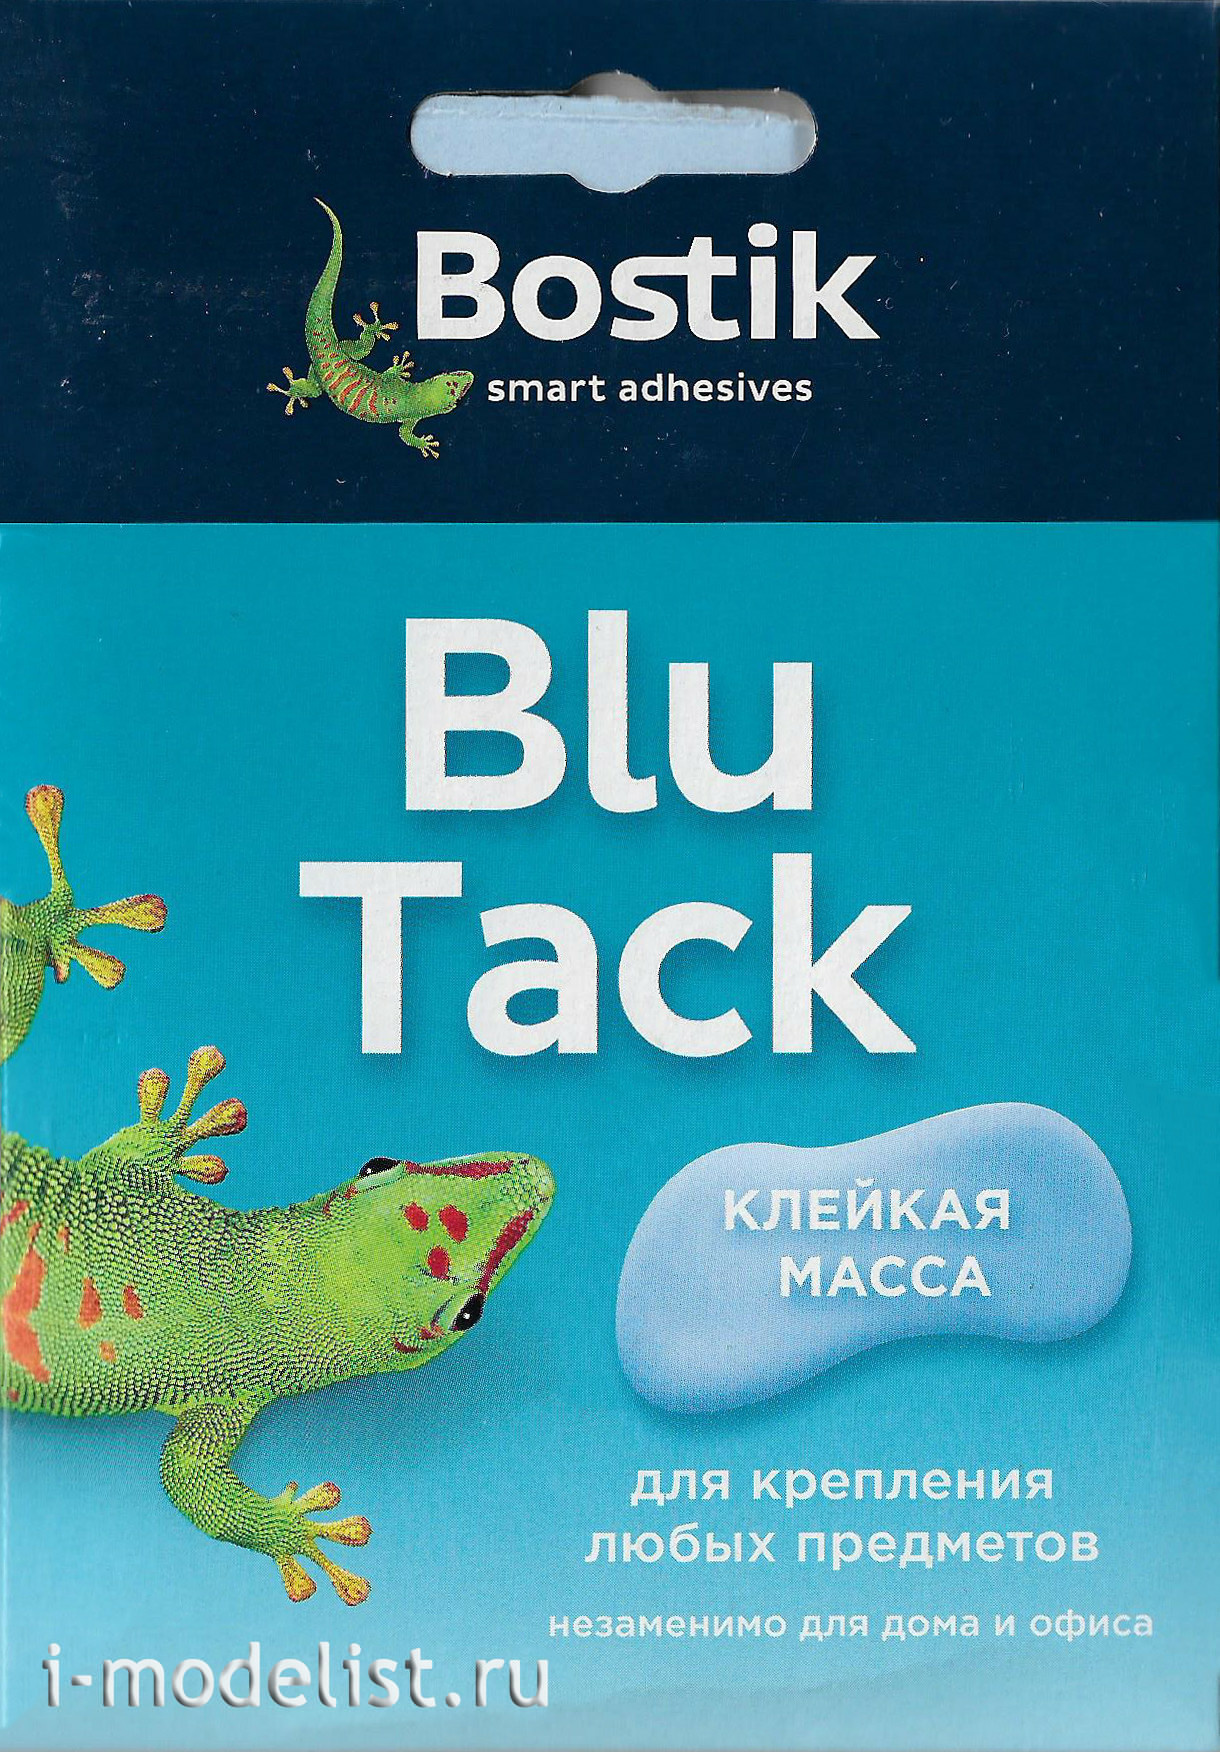 B1 Bostik  BLU TACK  (adhesive mass), 45 grams